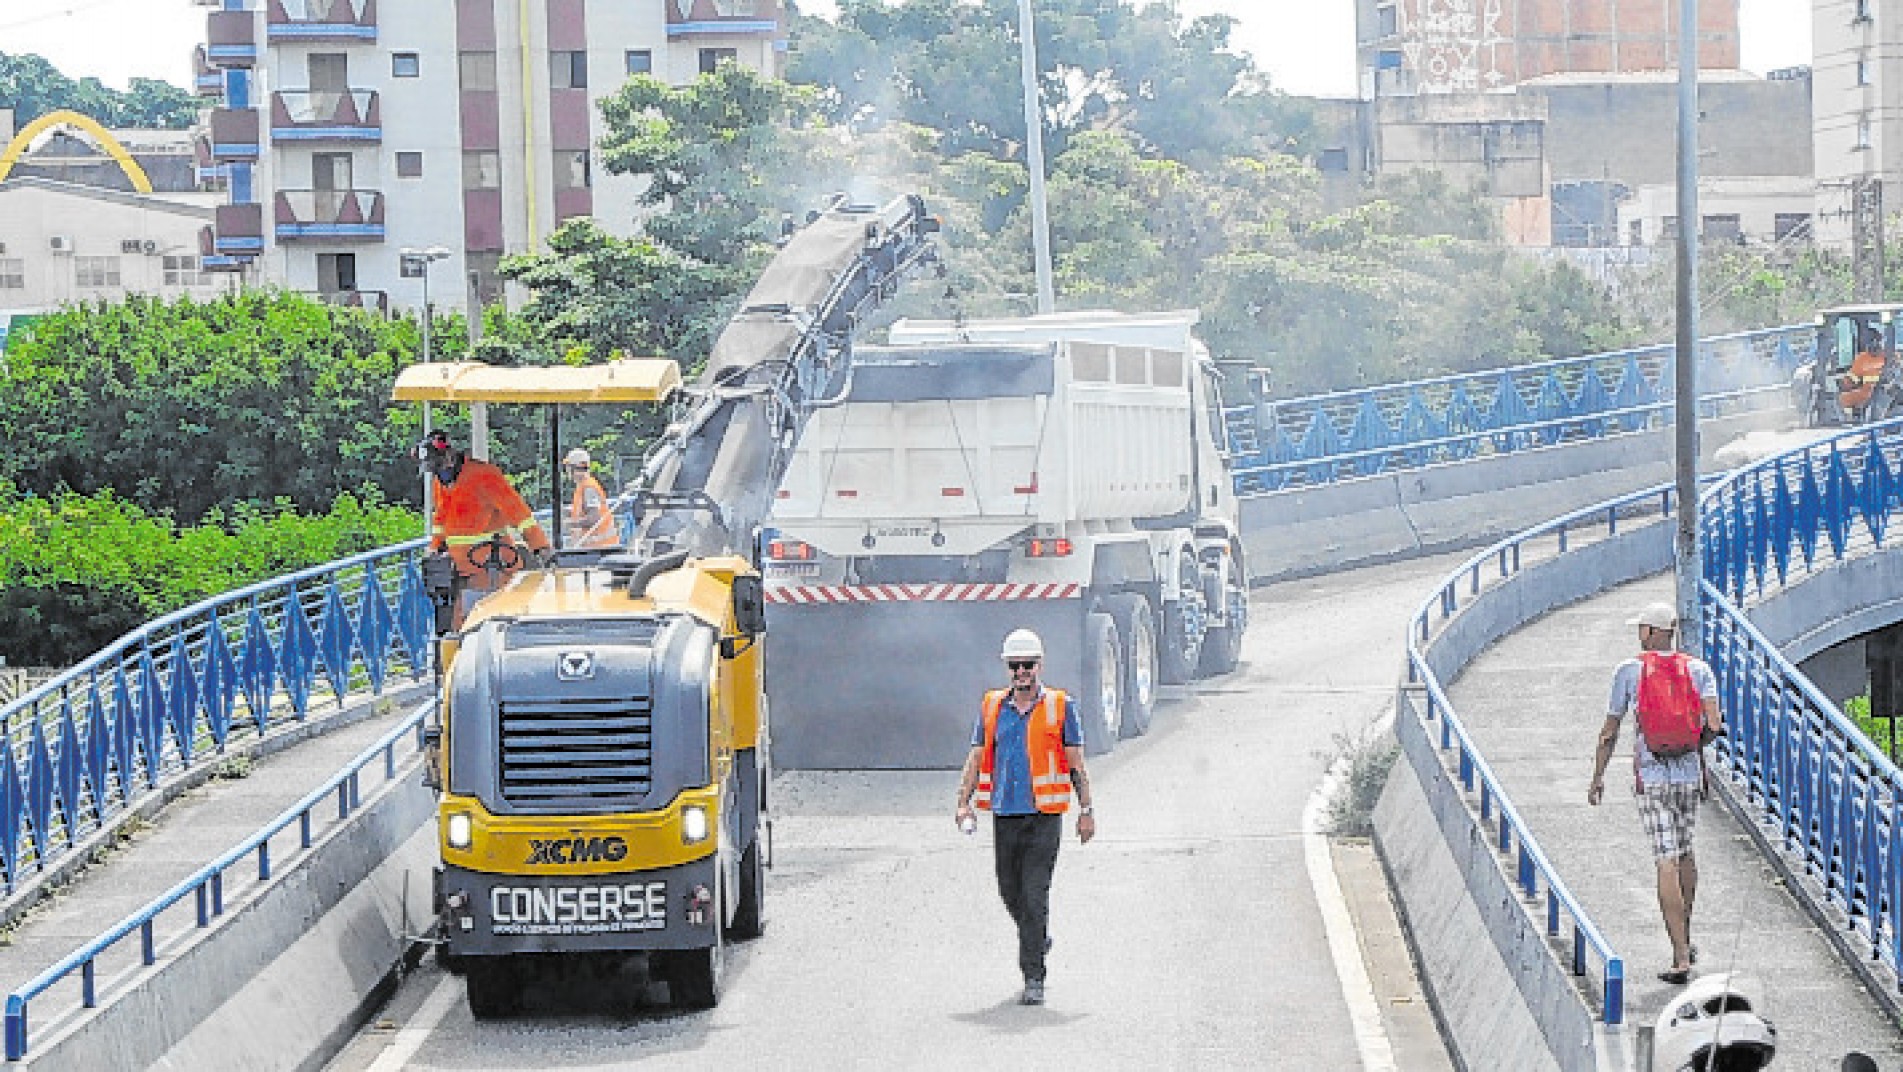 O acesso de veículos ao comércio na região do viaduto foi alterado
